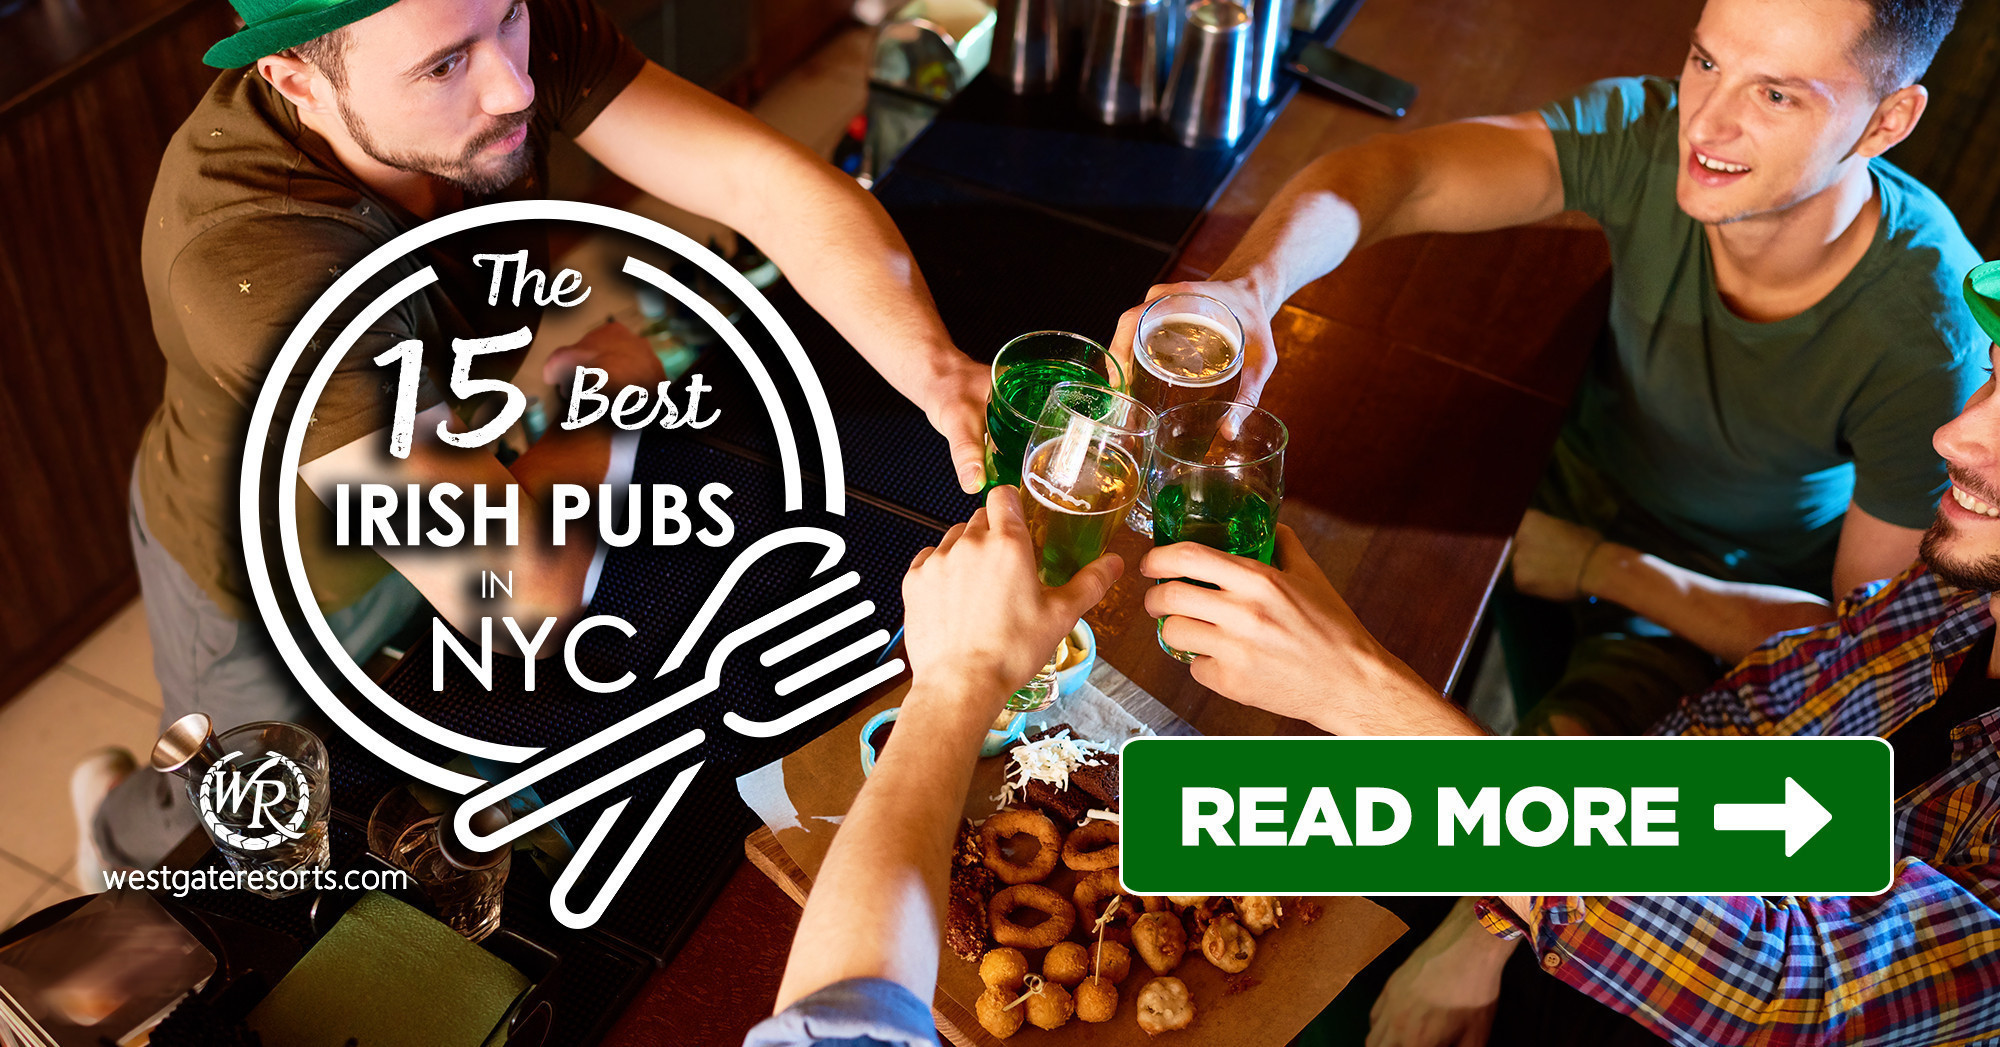 Los 15 mejores pubs irlandeses que los lugareños de Nueva York guardan en secreto